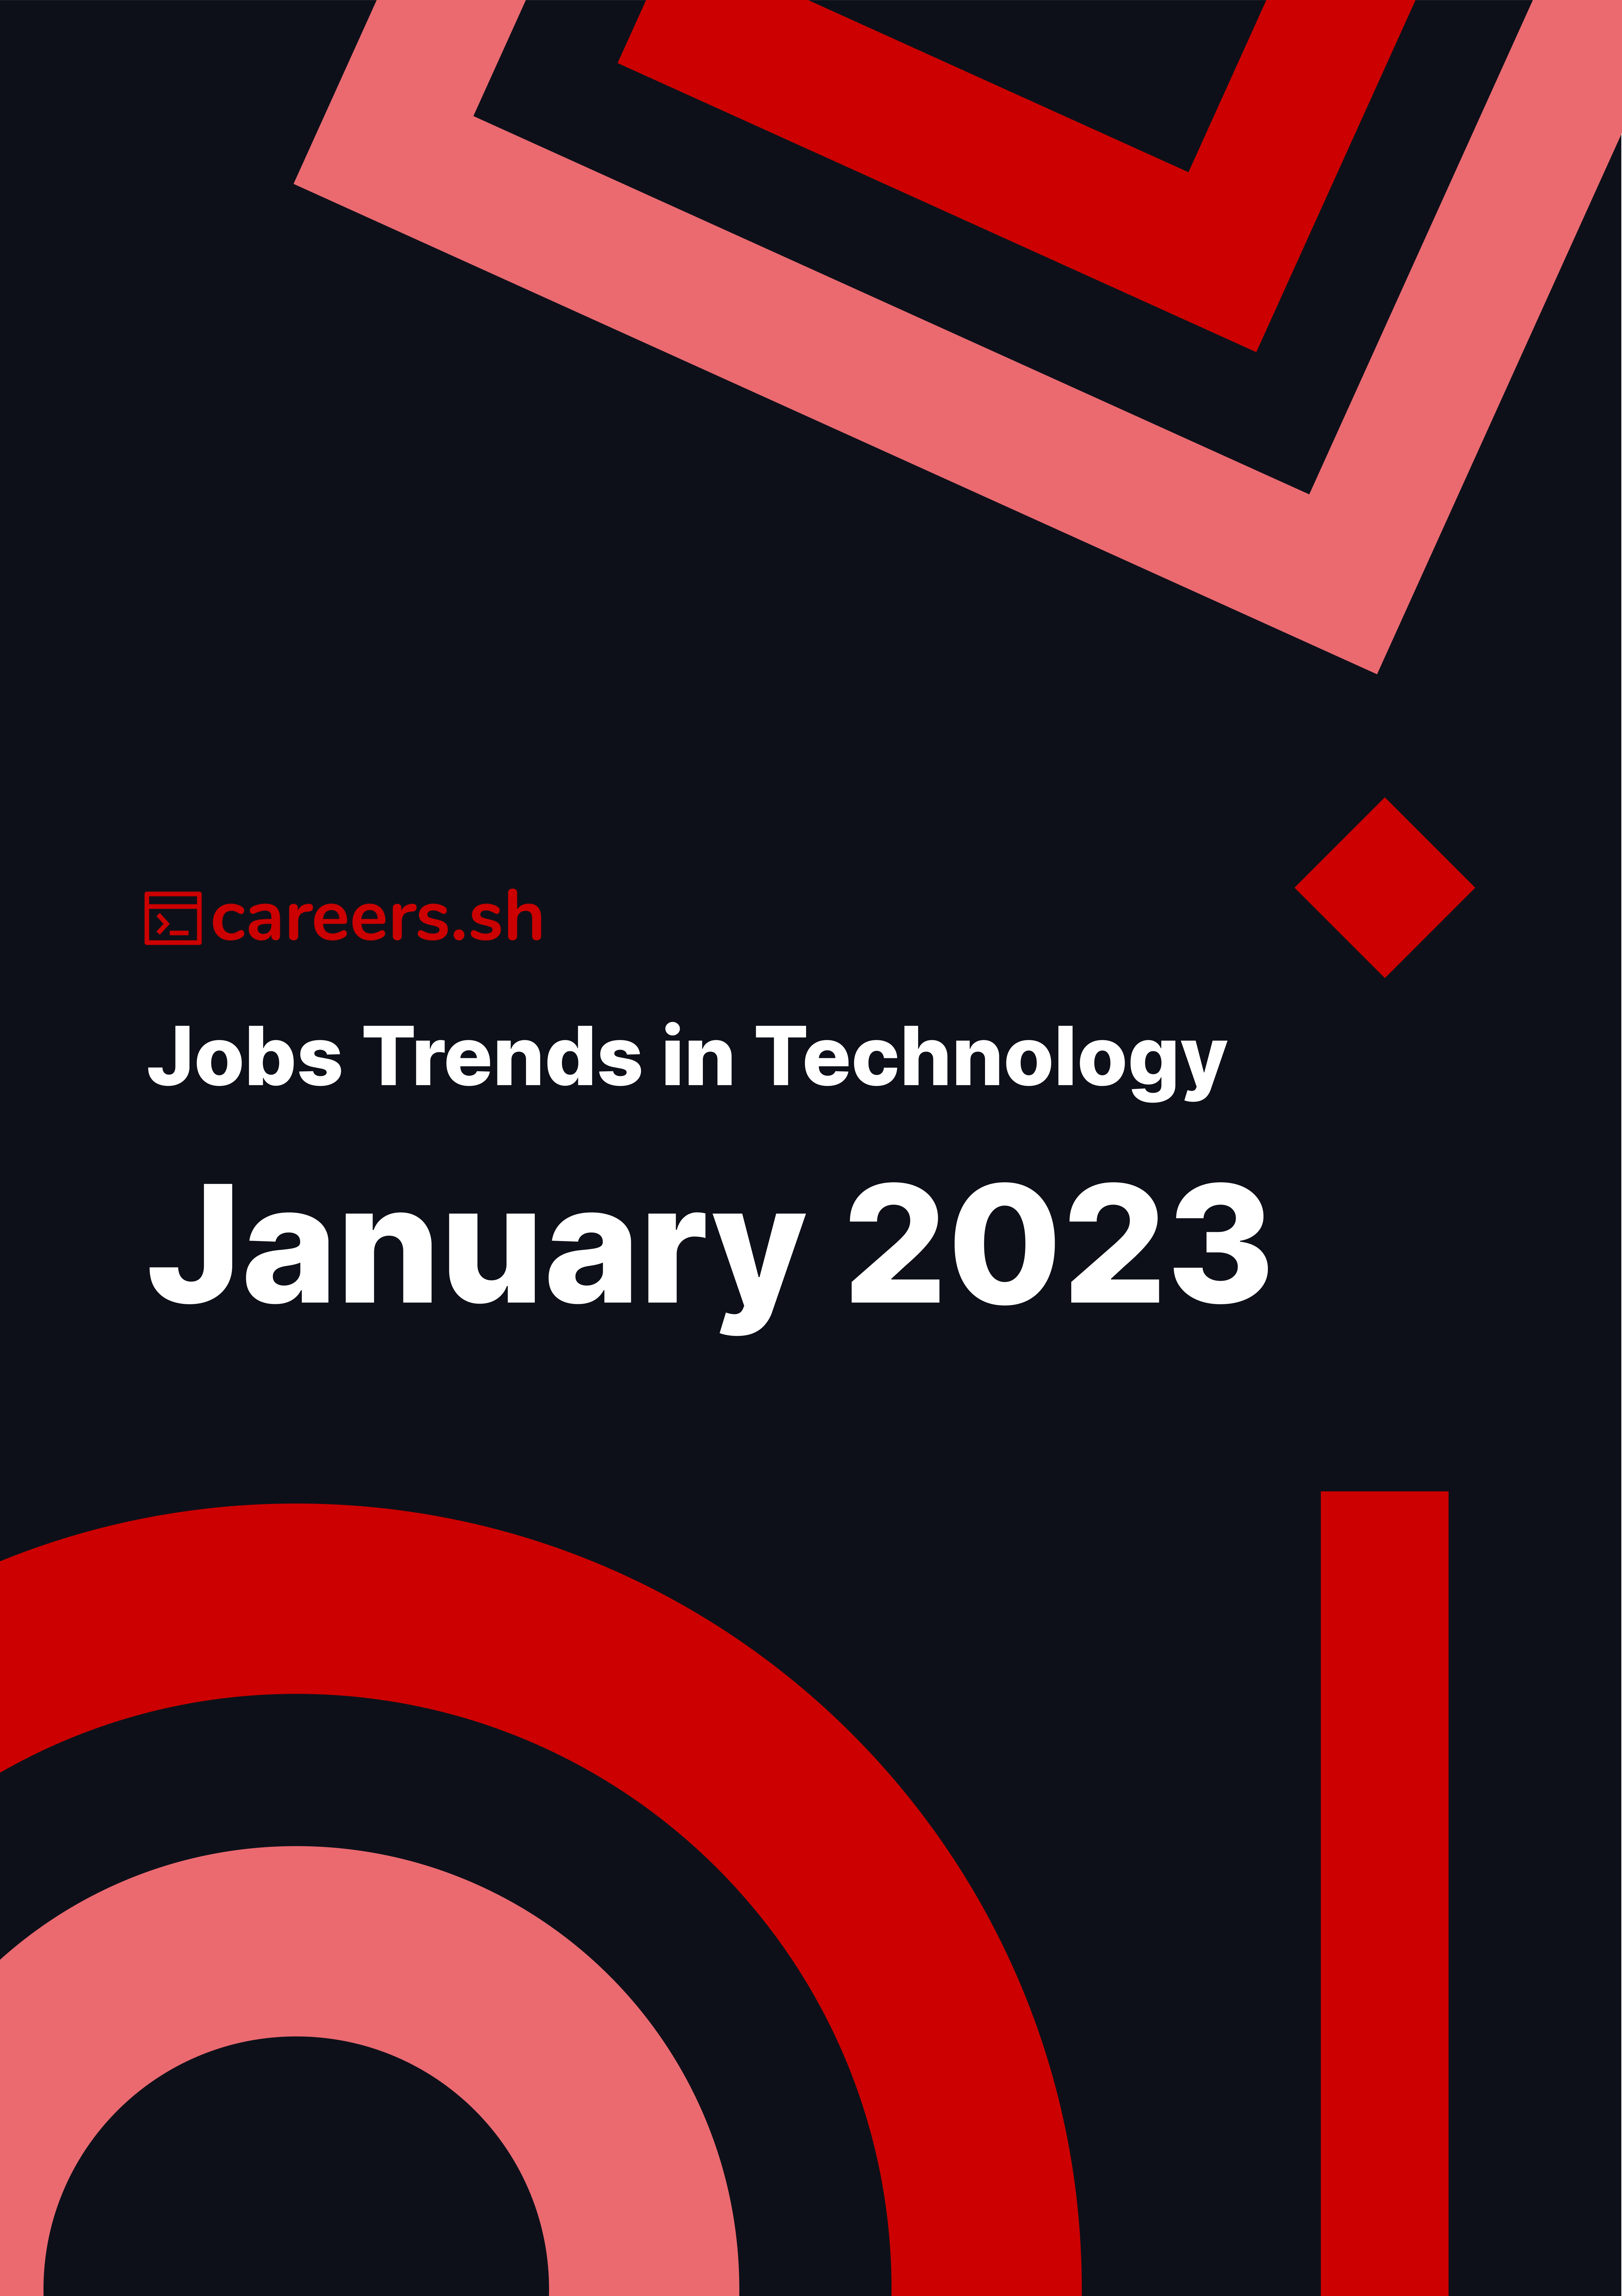 Careers.sh - January 2023